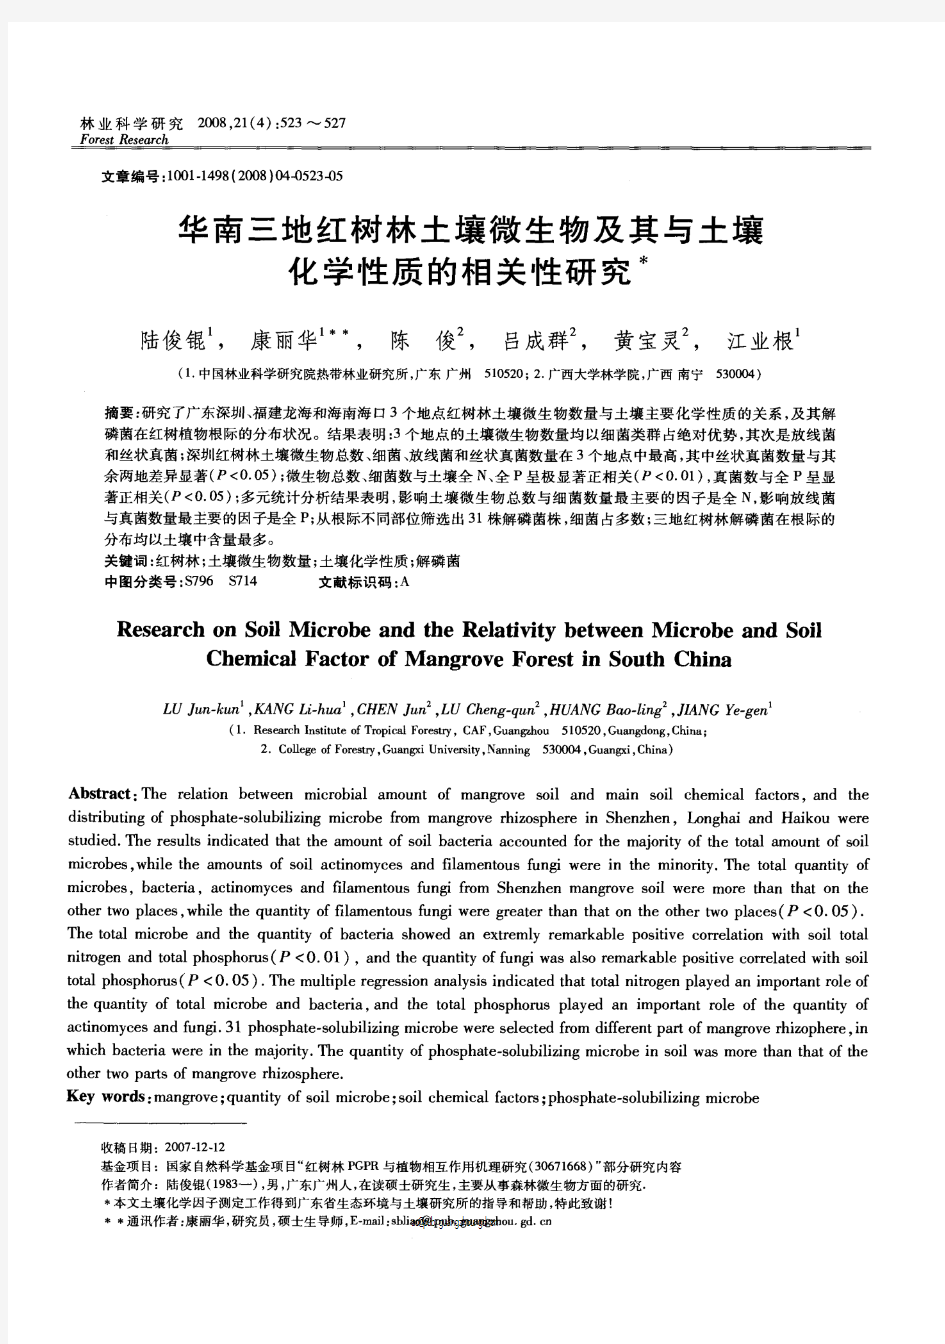 华南三地红树林土壤微生物及其与土壤化学性质的相关性研究